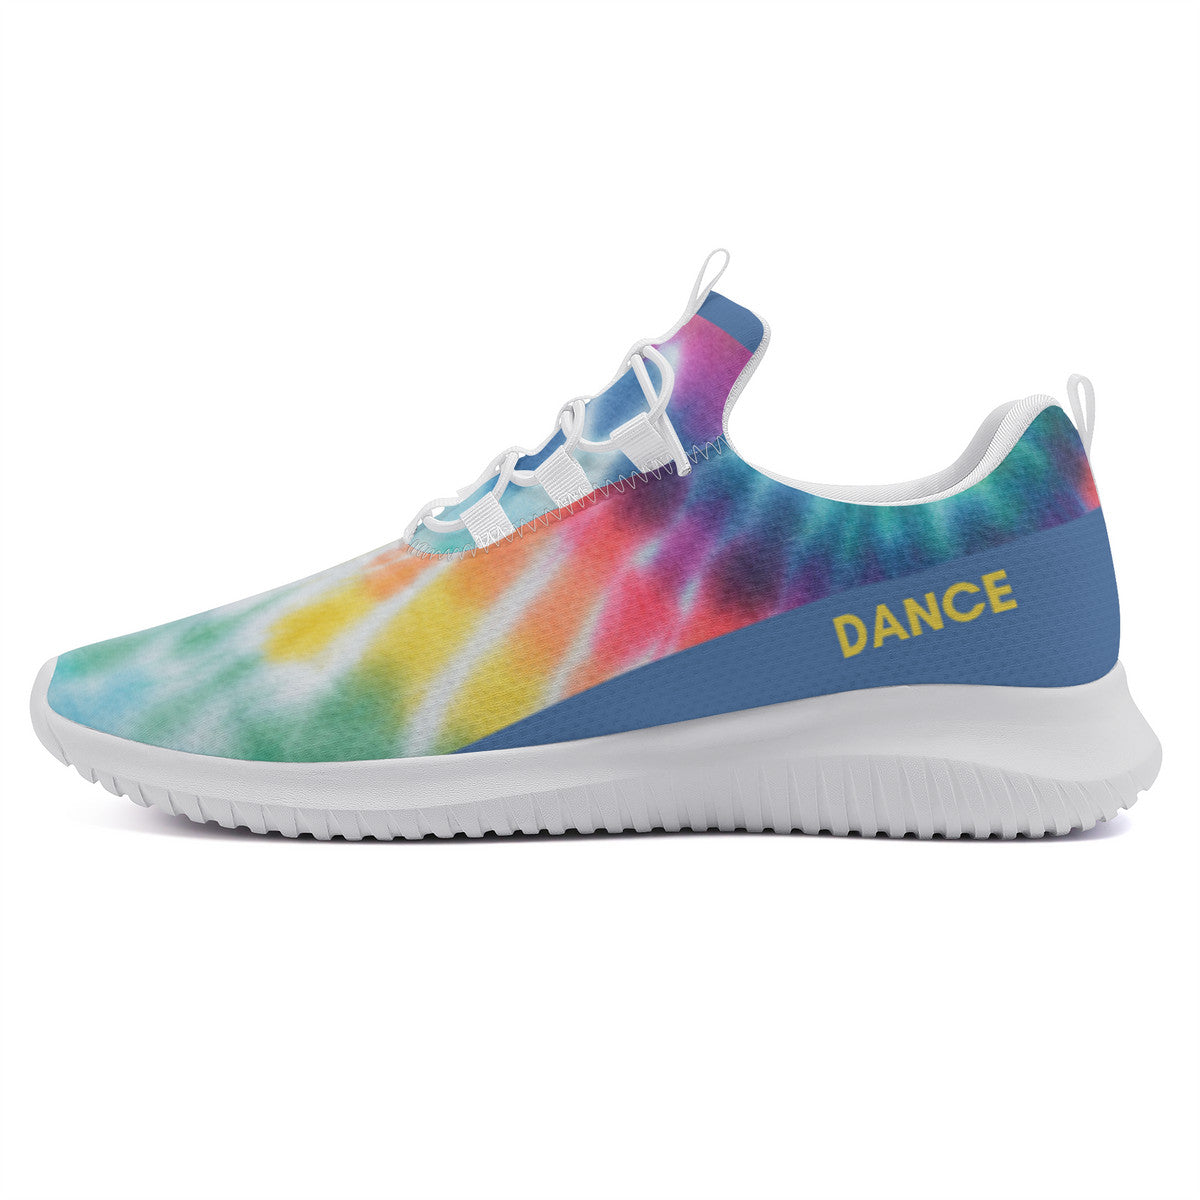 Dance Sneakers - Tie-Dye Dance Shoes